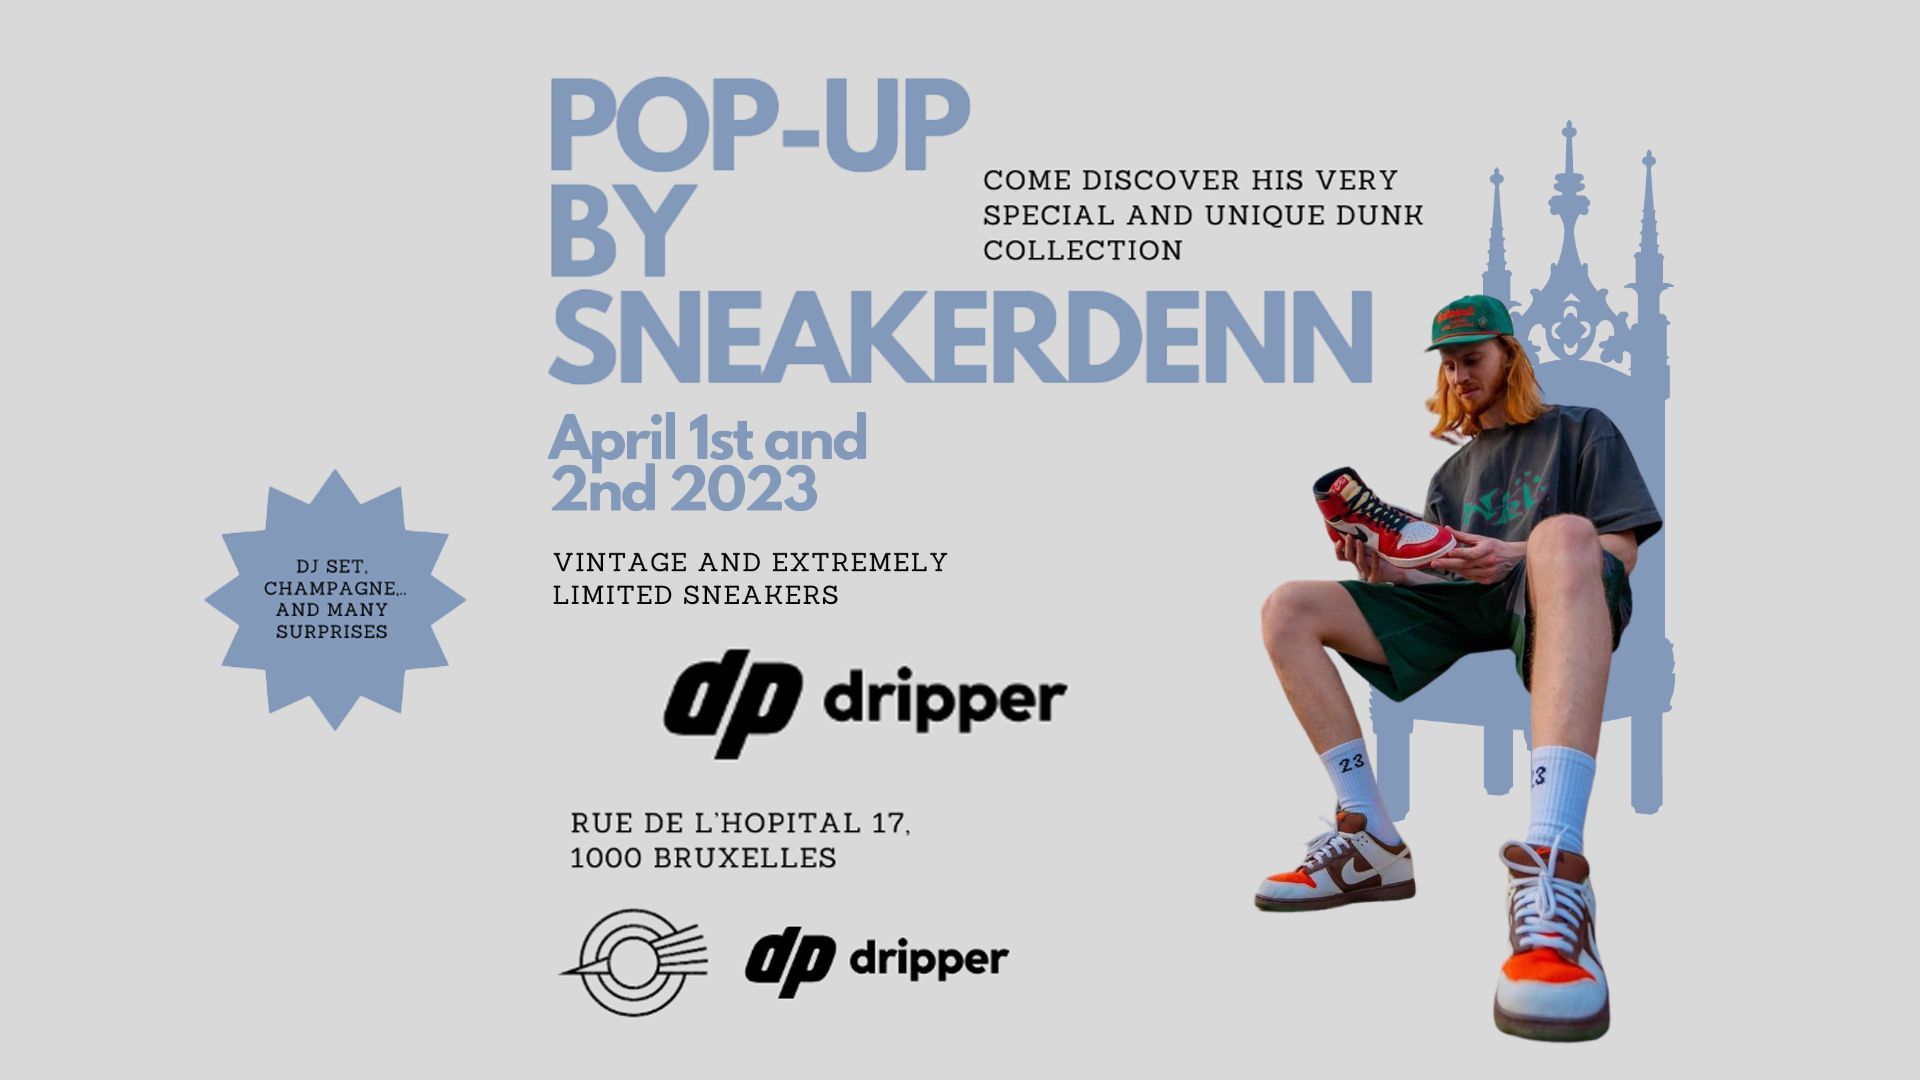 Un pop-up a Bruxelles per veri sneakerhead con Sneakerdenn